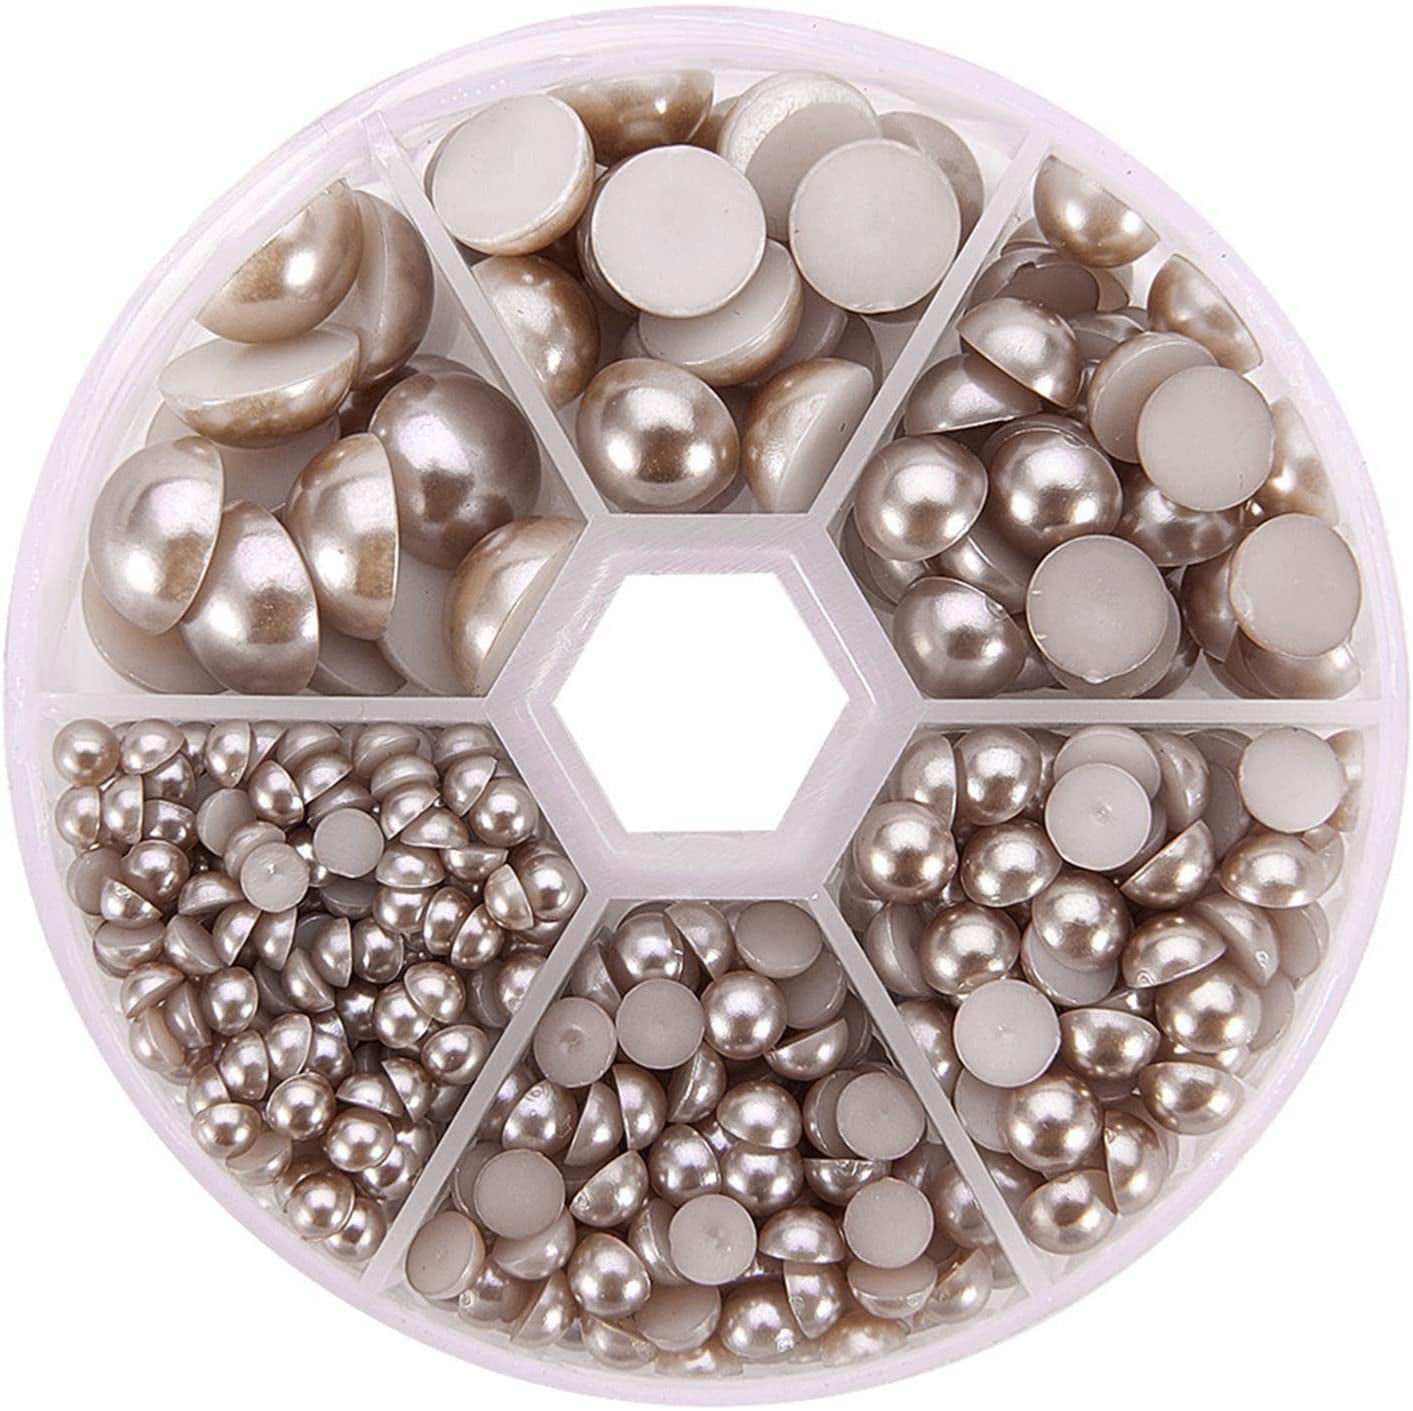 690pcs/Box Flat Back Plastic Cabochons Pearl Finish Round Dome Tile White 4~12mm 